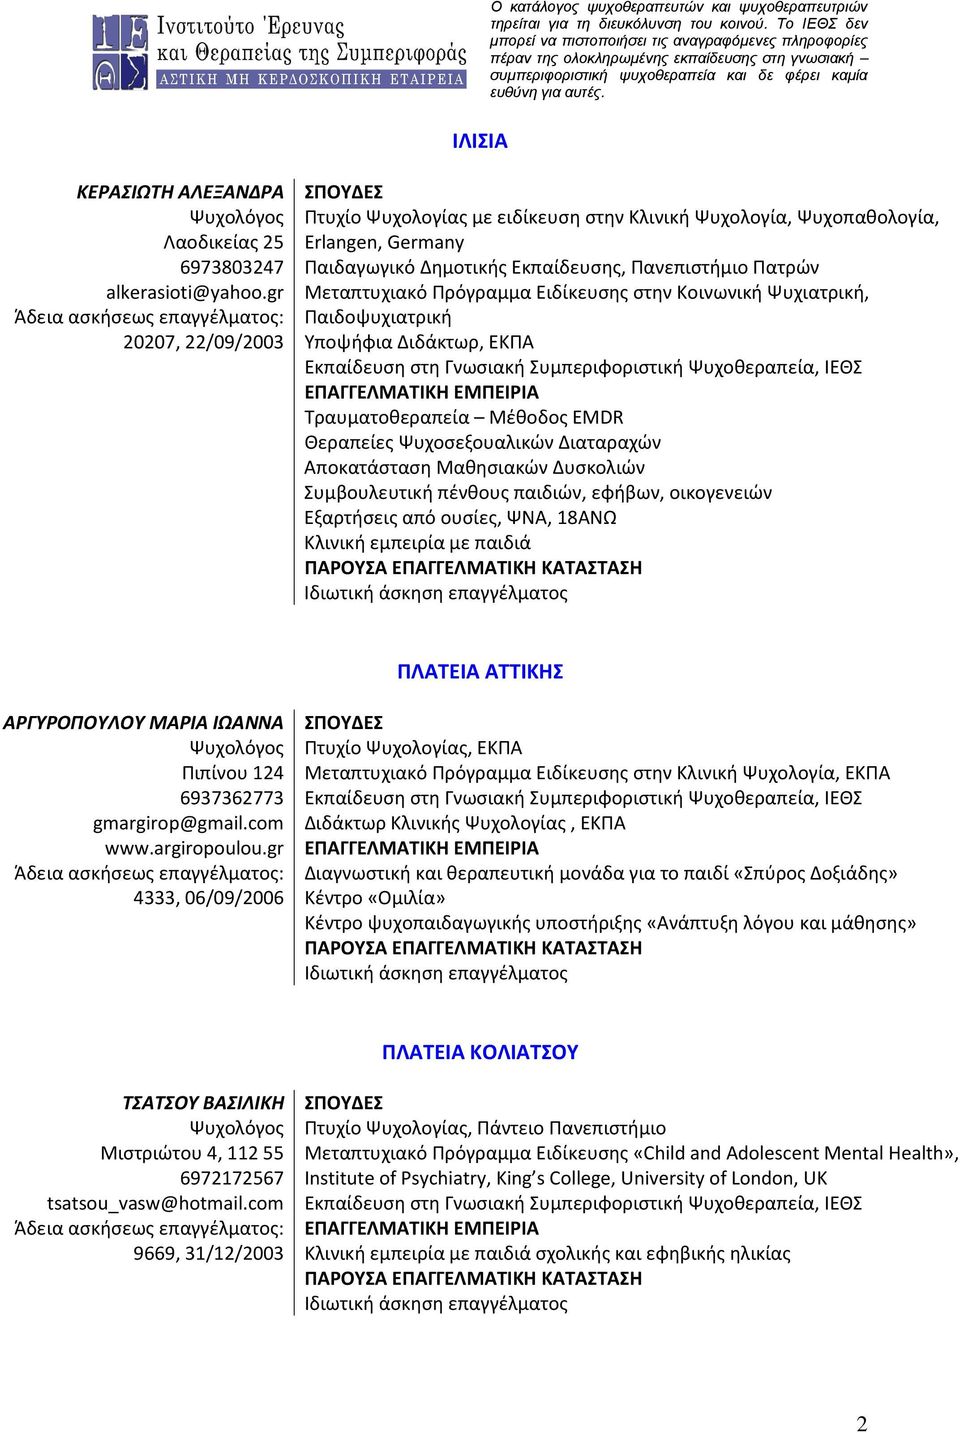 gr Μεταπτυχιακό Πρόγραμμα Ειδίκευσης στην Κοινωνική Ψυχιατρική, Άδεια ασκήσεως επαγγέλματος: Παιδοψυχιατρική 20207, 22/09/2003 Υποψήφια Διδάκτωρ, ΕΚΠΑ Εκπαίδευση στη Γνωσιακή Συμπεριφοριστική